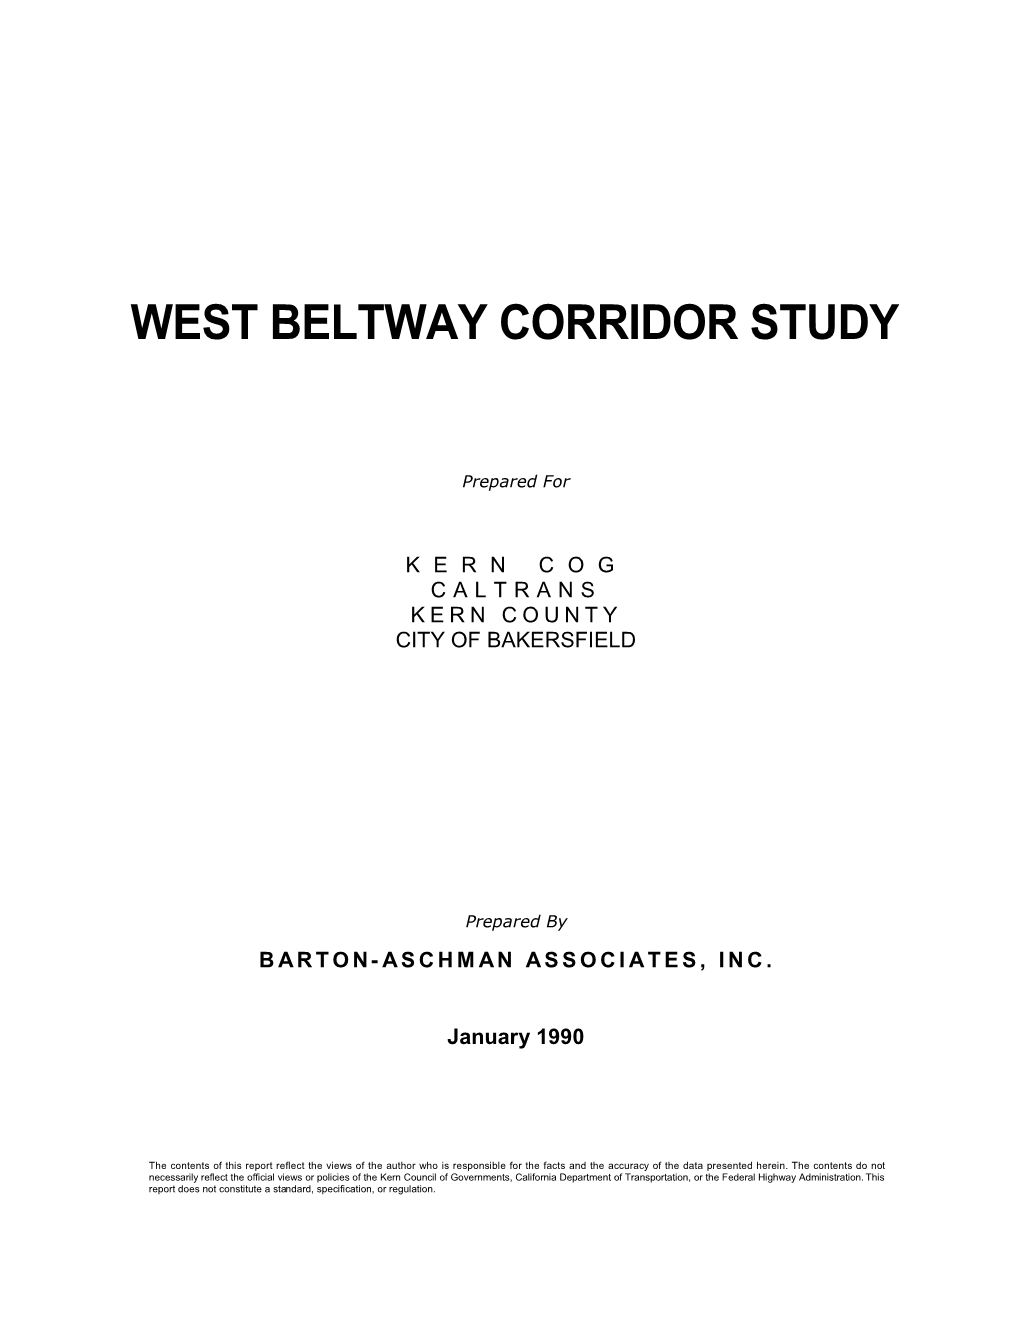 West Beltway Corridor Study